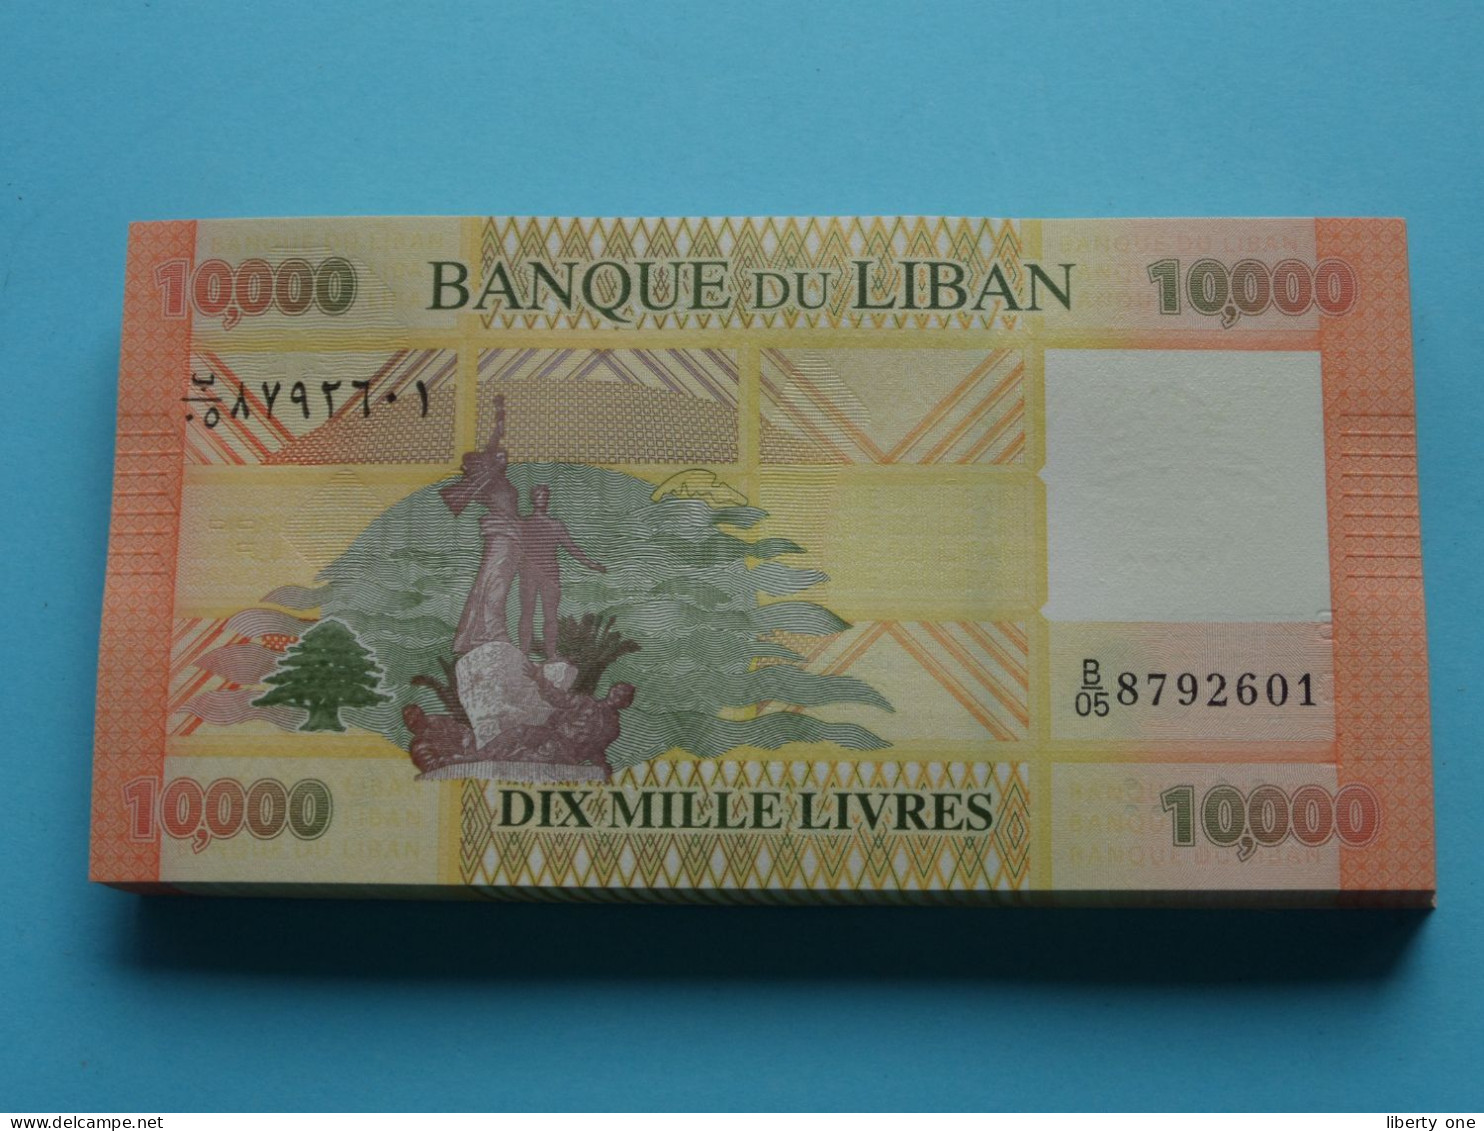 10.000 Dix Mille Livres ( Banque Du Liban ) Lebanon 2014 ( For Grade, Please See SCANS ) UNC ! - Líbano